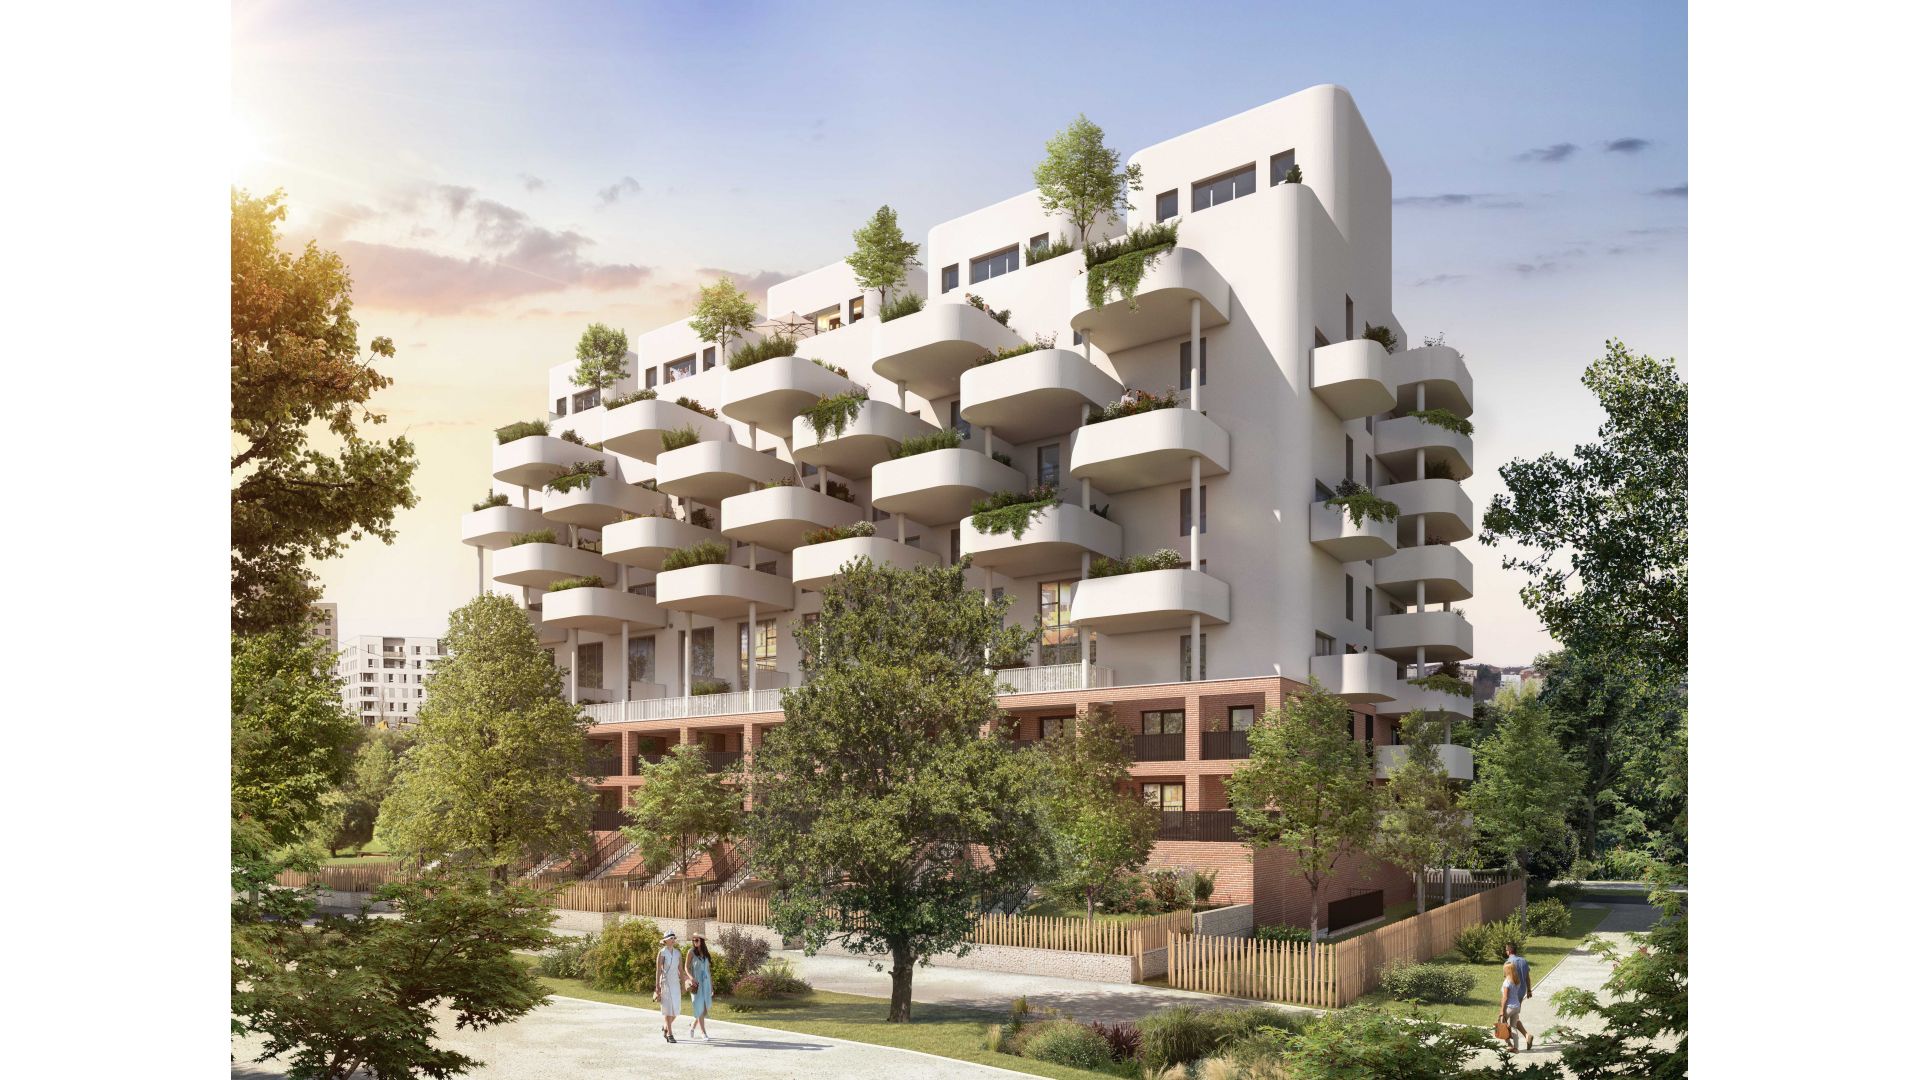 Greencity immobilier - achat appartements neufs du T2 au T5 Duplex - Résidence Home Spirit - 31400 Toulouse Montaudran  